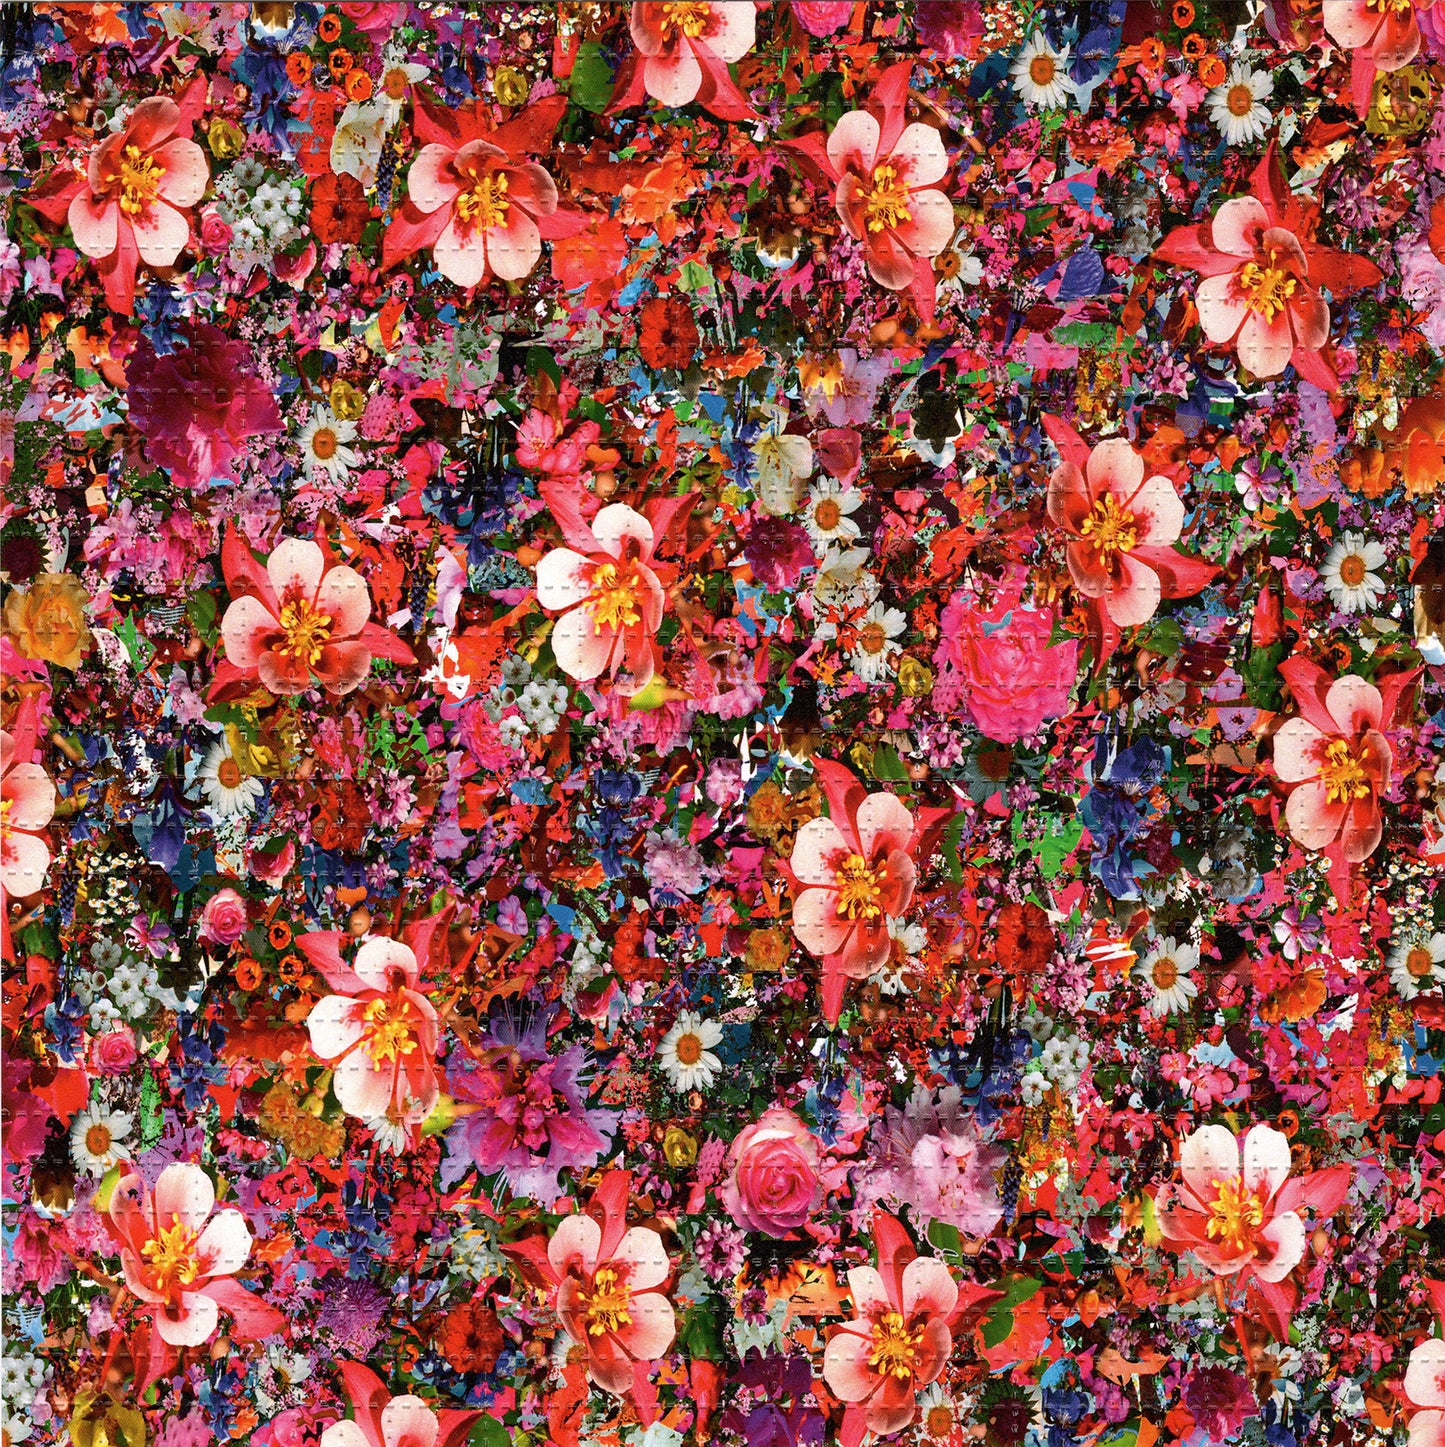 Flower Petals LSD blotter art print